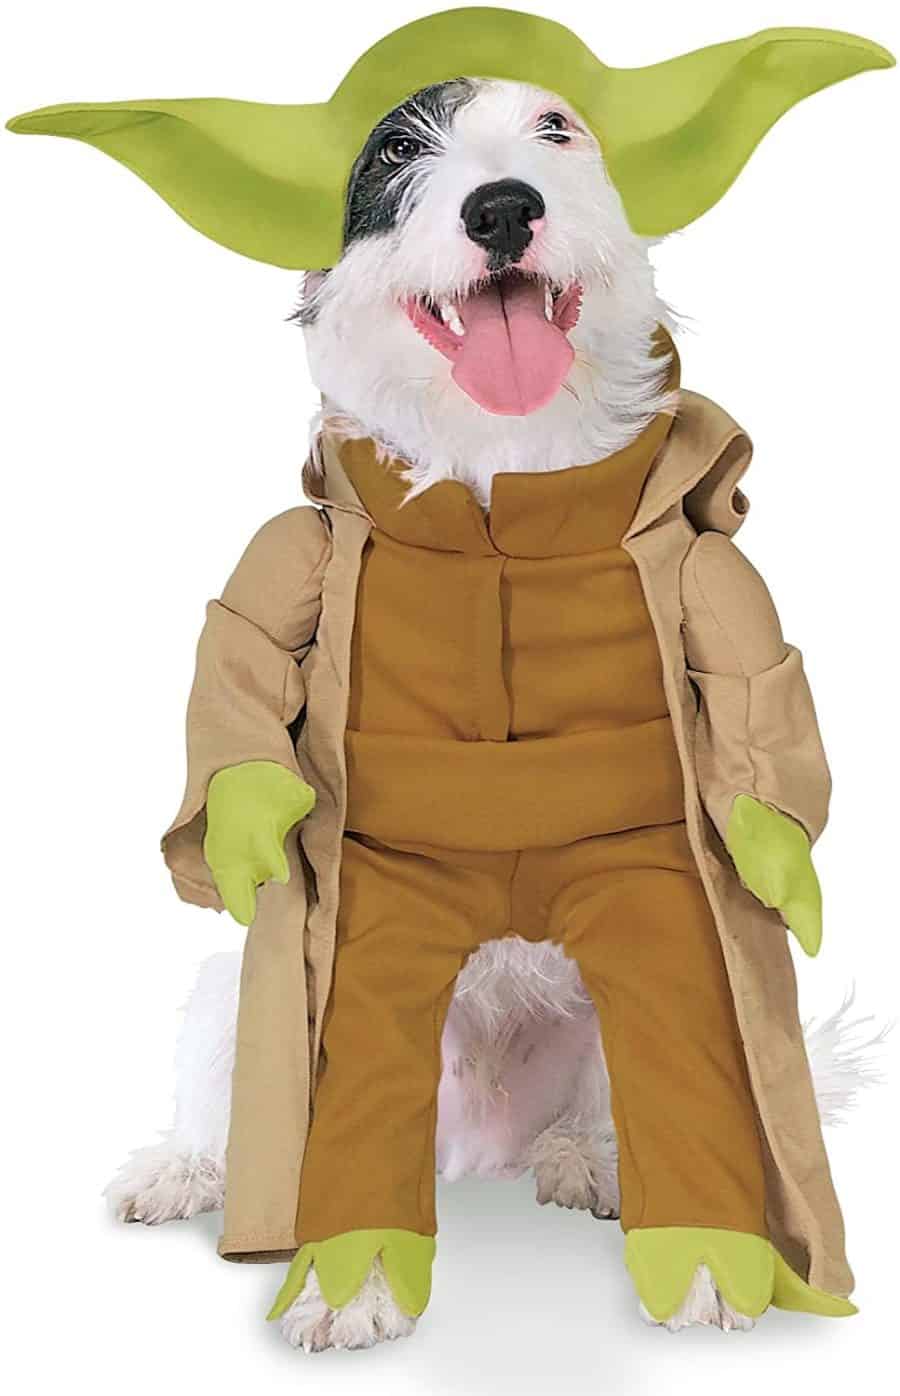 Yoda dog costume